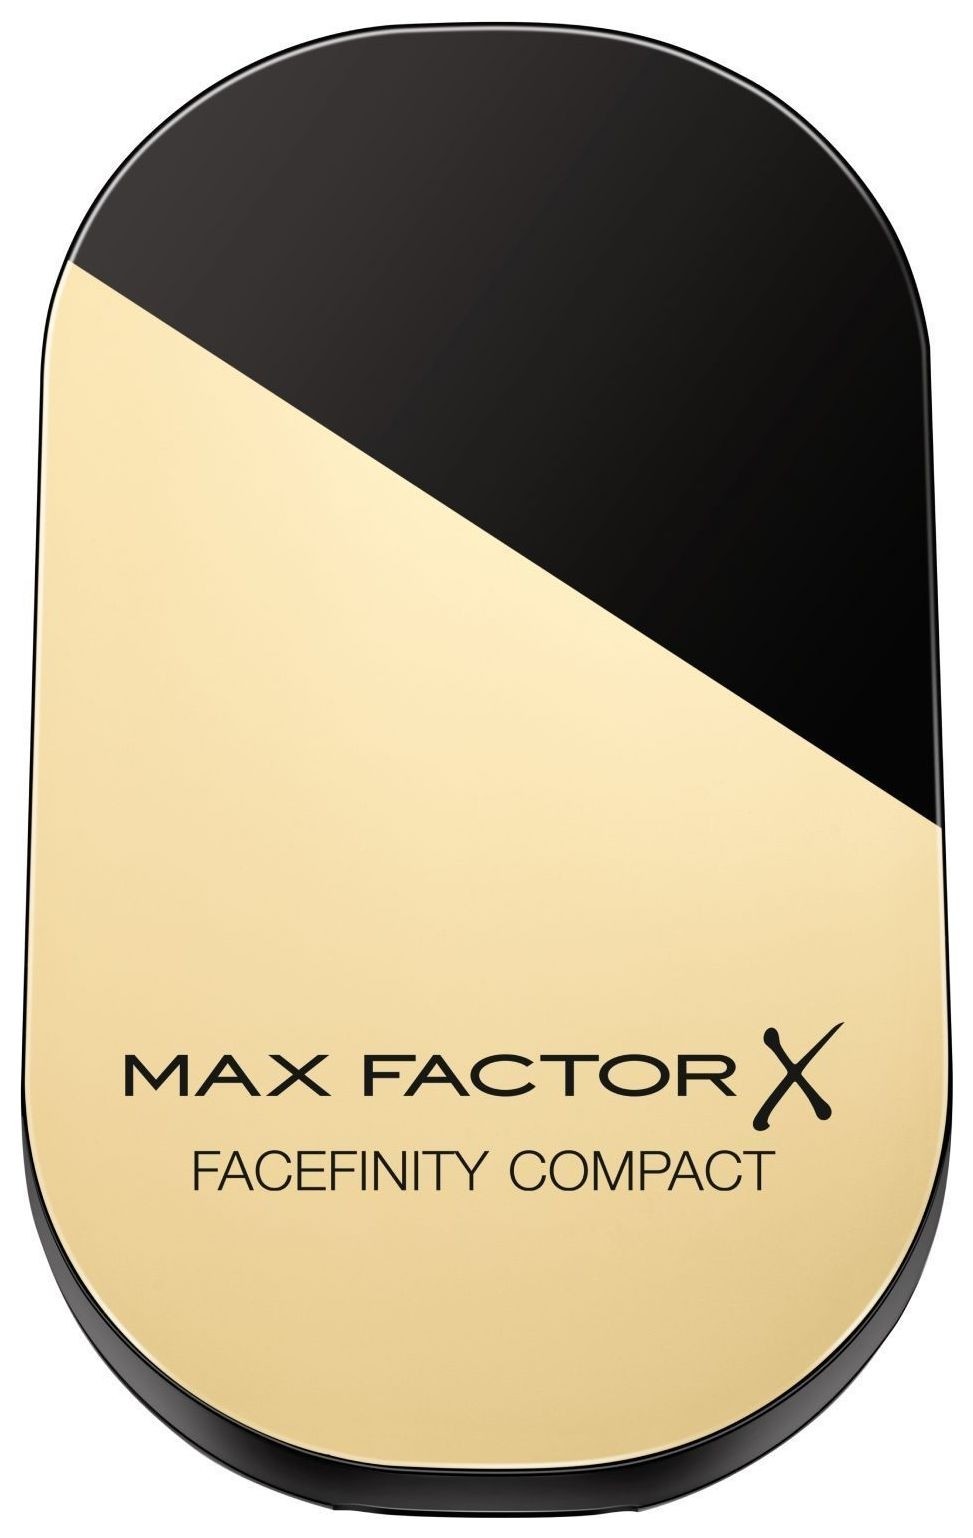 Компактная пудра для лица Facefinity сompact Max Factor